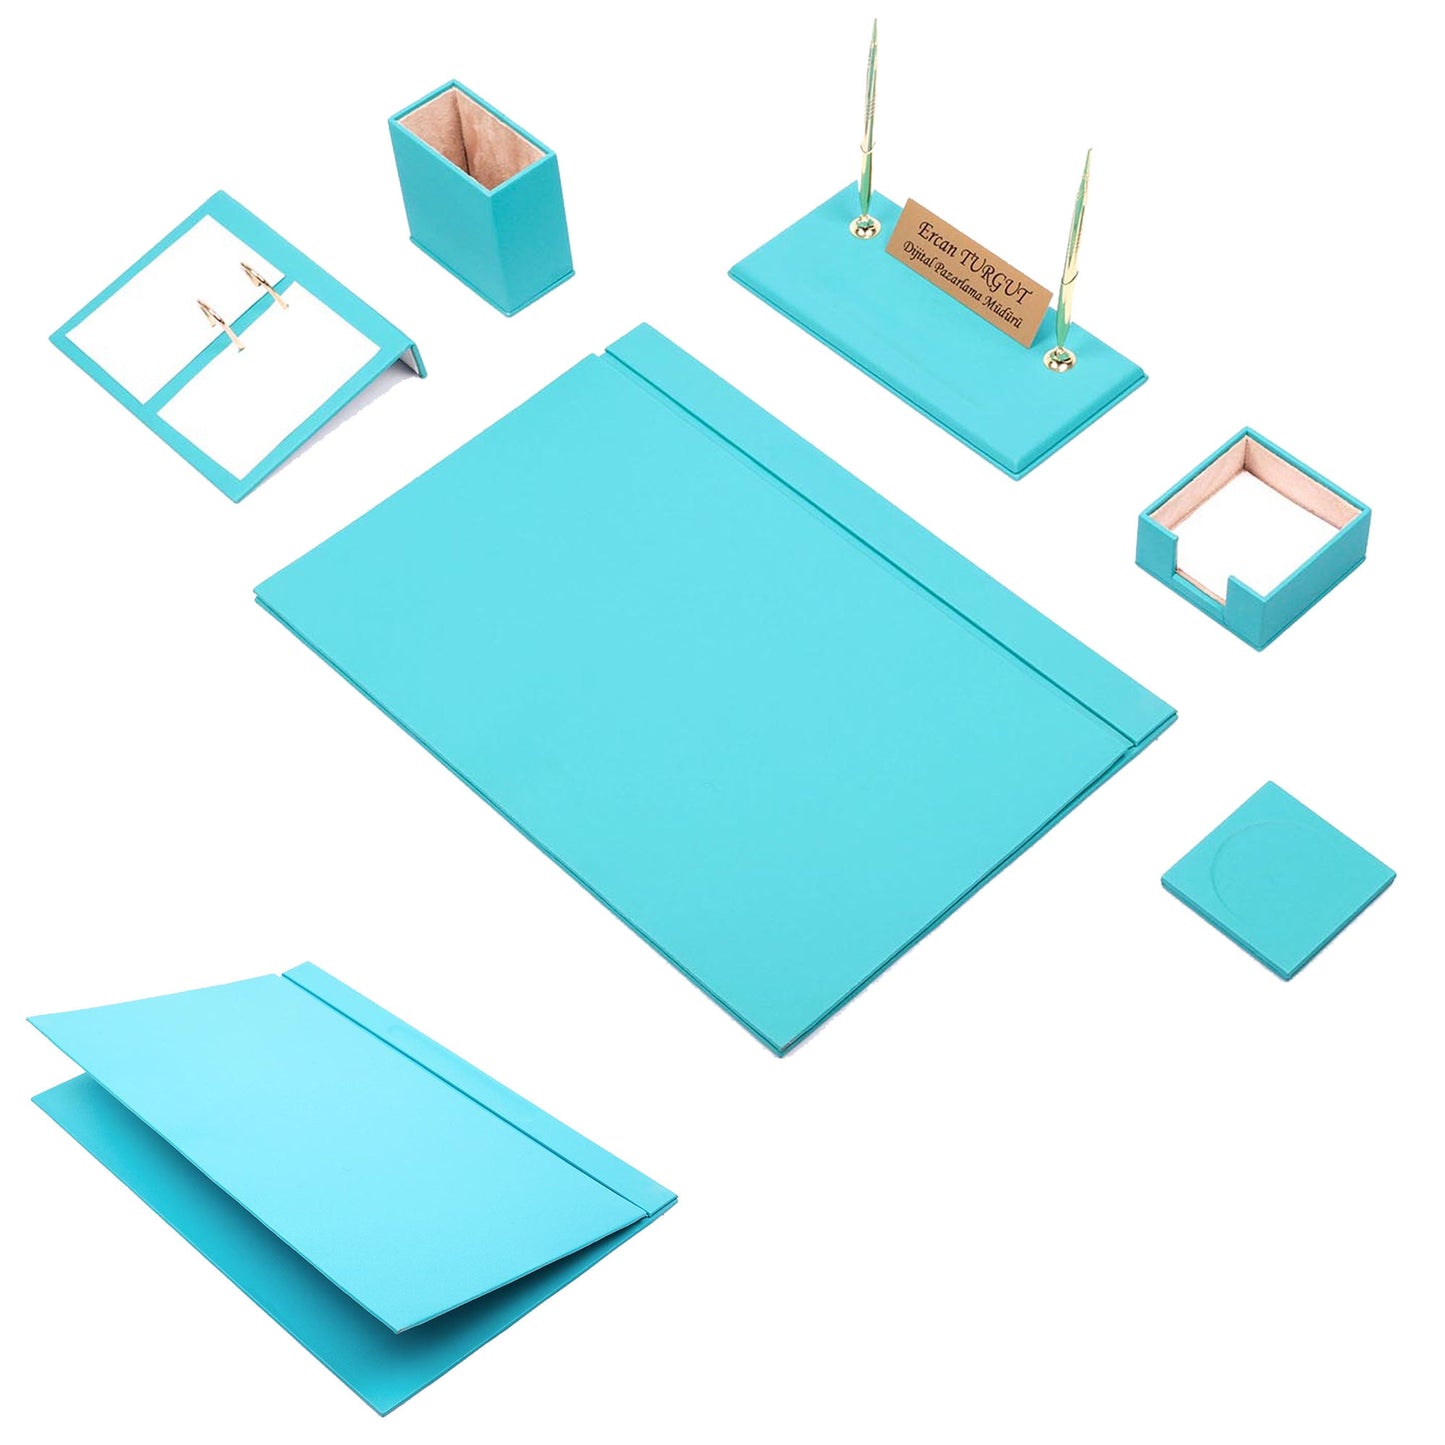 Leather Desk Set - Desk Organizer Set - Office Desk Pad Accessories - Leather Coaster - Desk Accessories